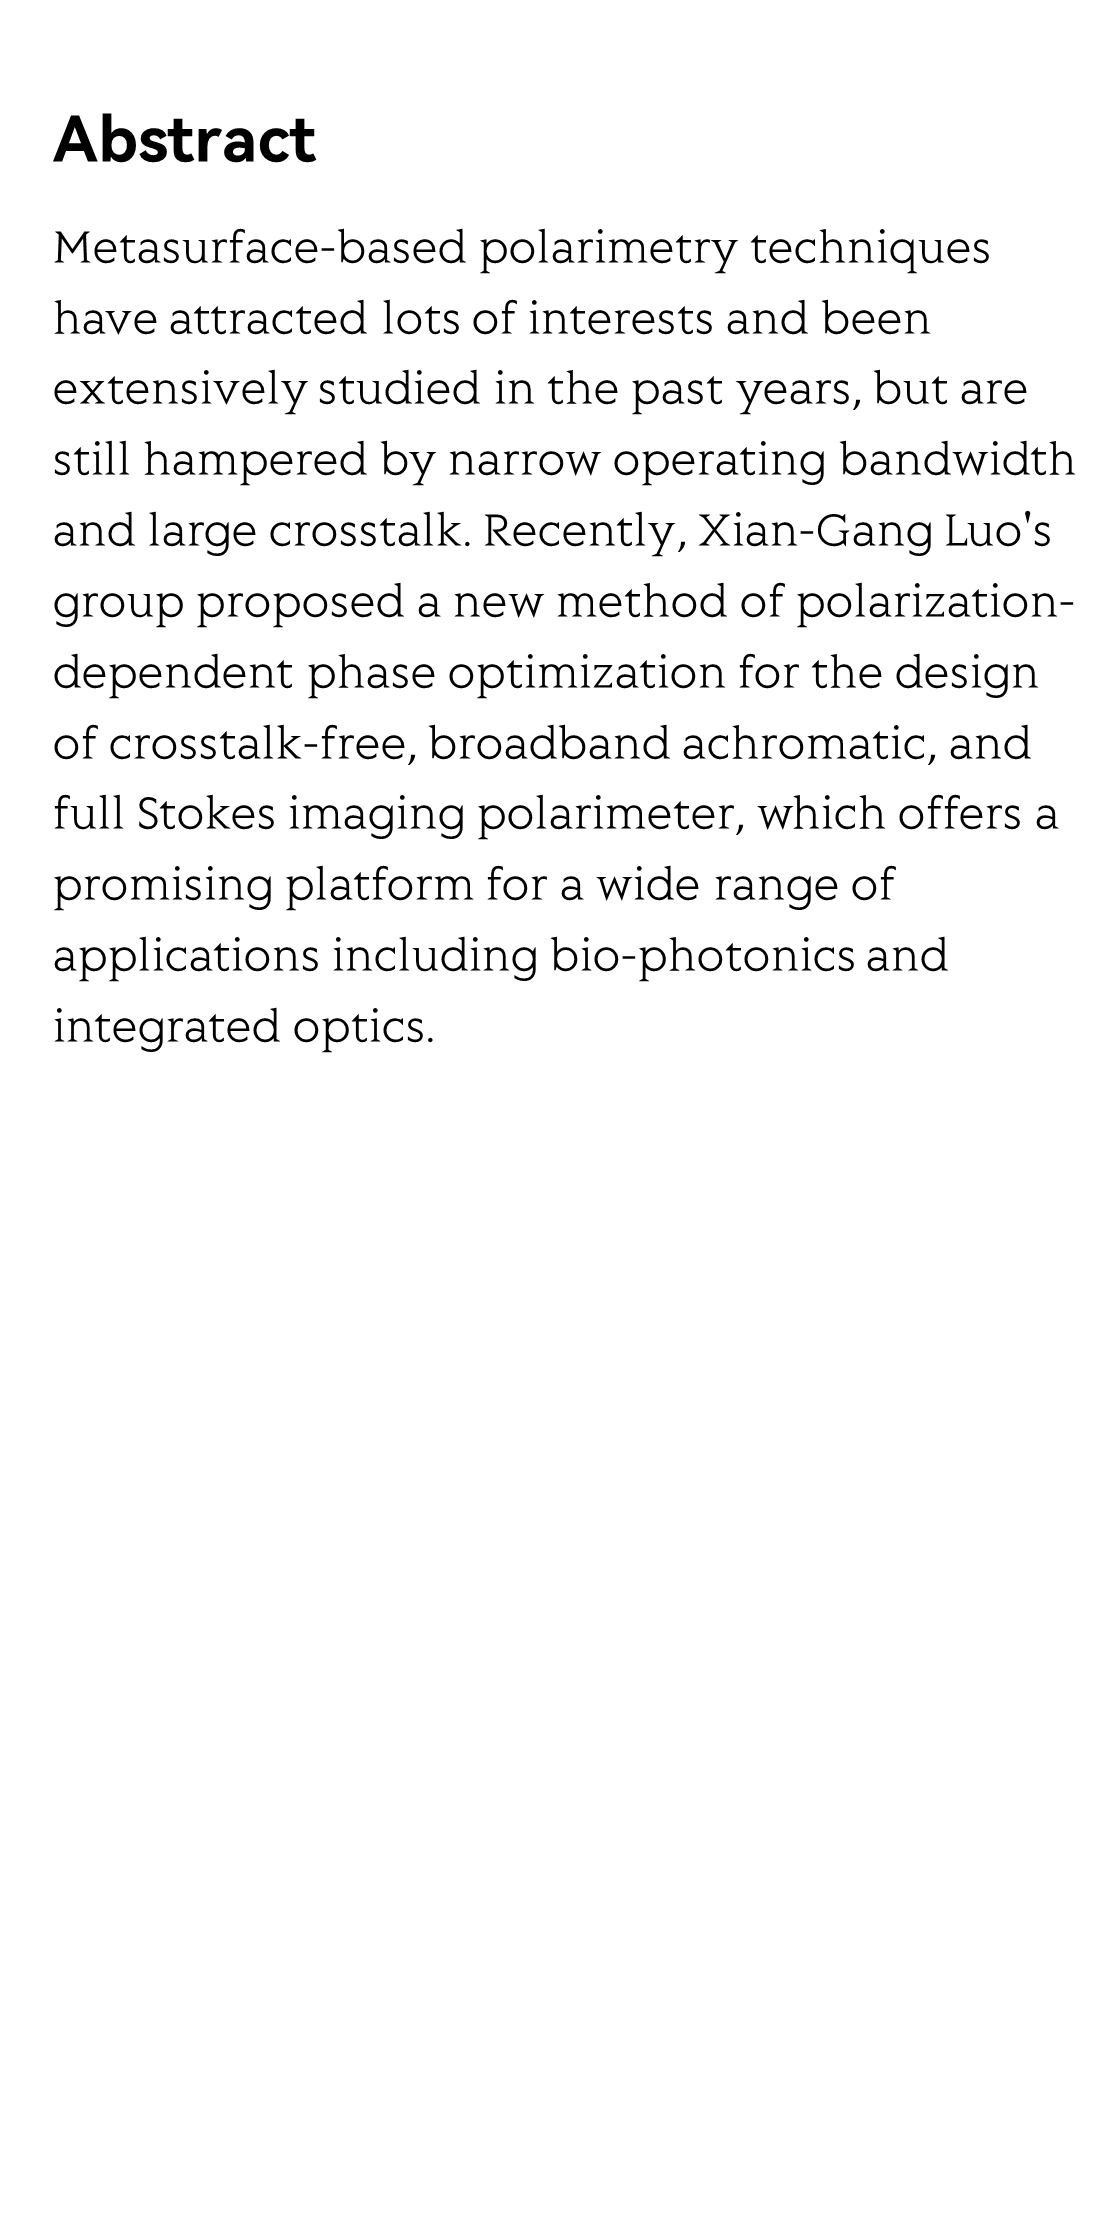 A novel method for designing crosstalk-free achromatic full Stokes imaging polarimeter_2